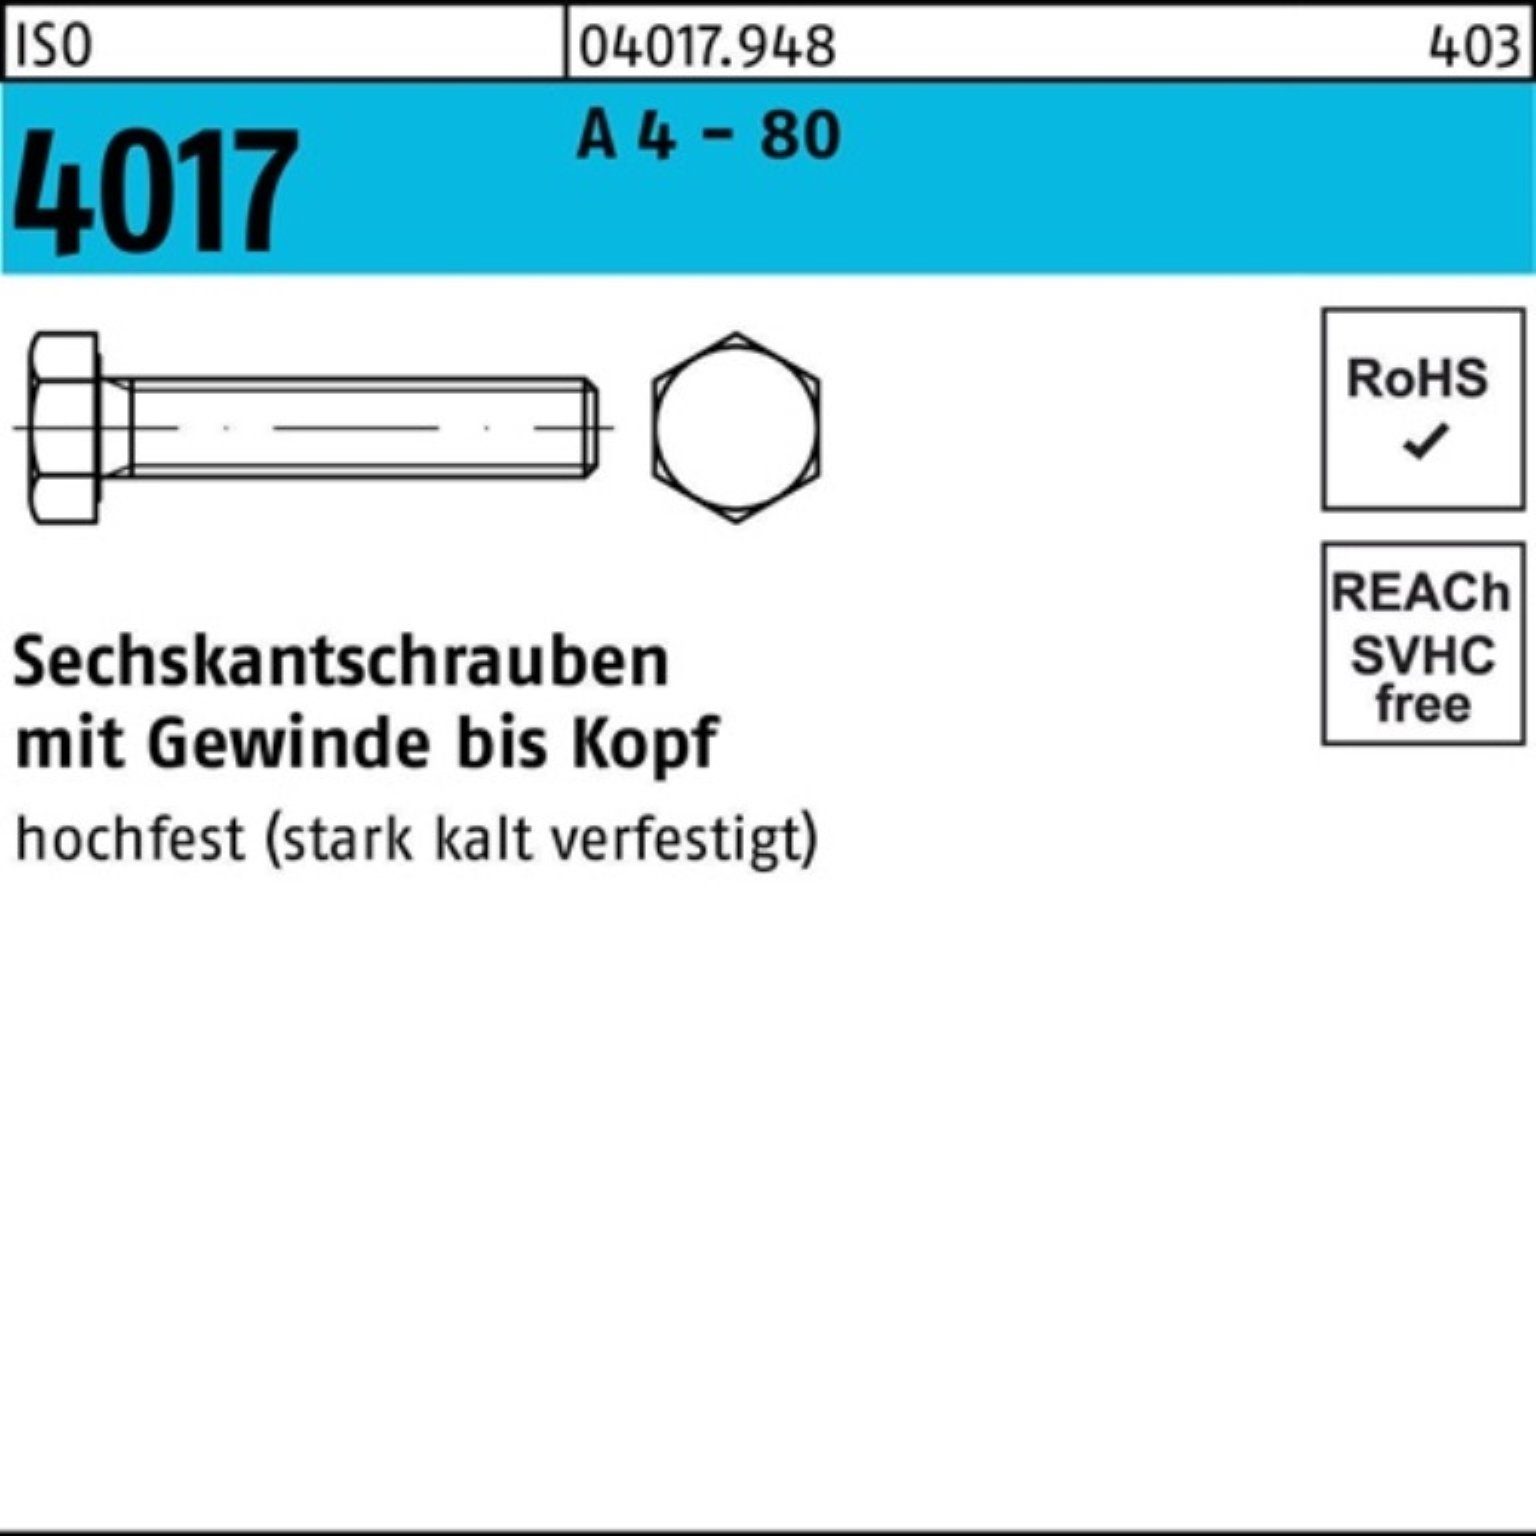 Bufab Sechskantschraube 100er Pack Sechskantschraube ISO 4017 VG M10x 70 A 4 - 80 100 Stück I